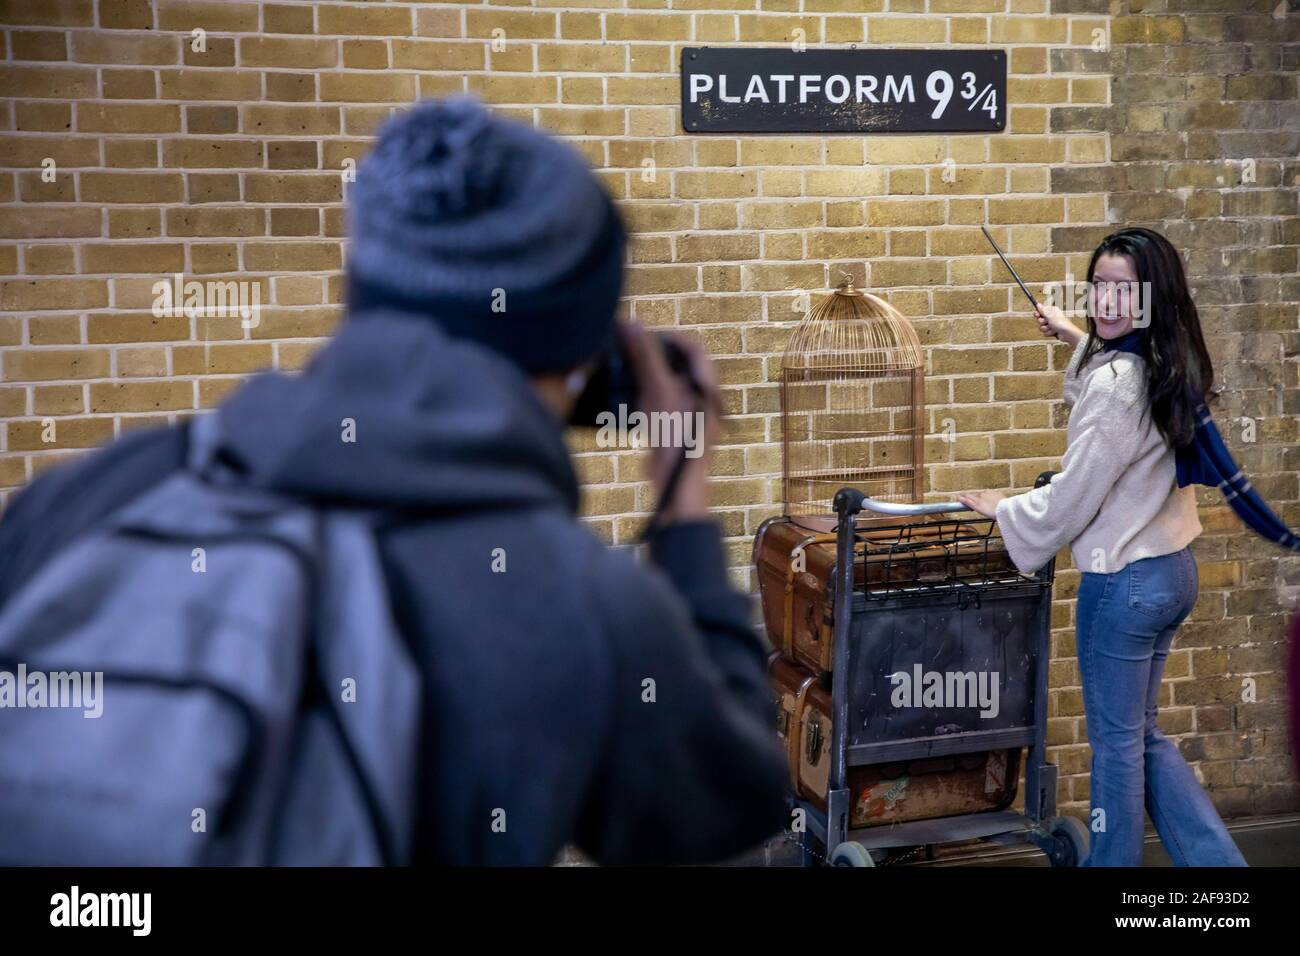 La estación de Kings Cross Station, la estación Hall, Londres, Gran Bretaña, la plataforma 9 3/4, la ubicación de la primera película de Harry Potter, Foto de stock